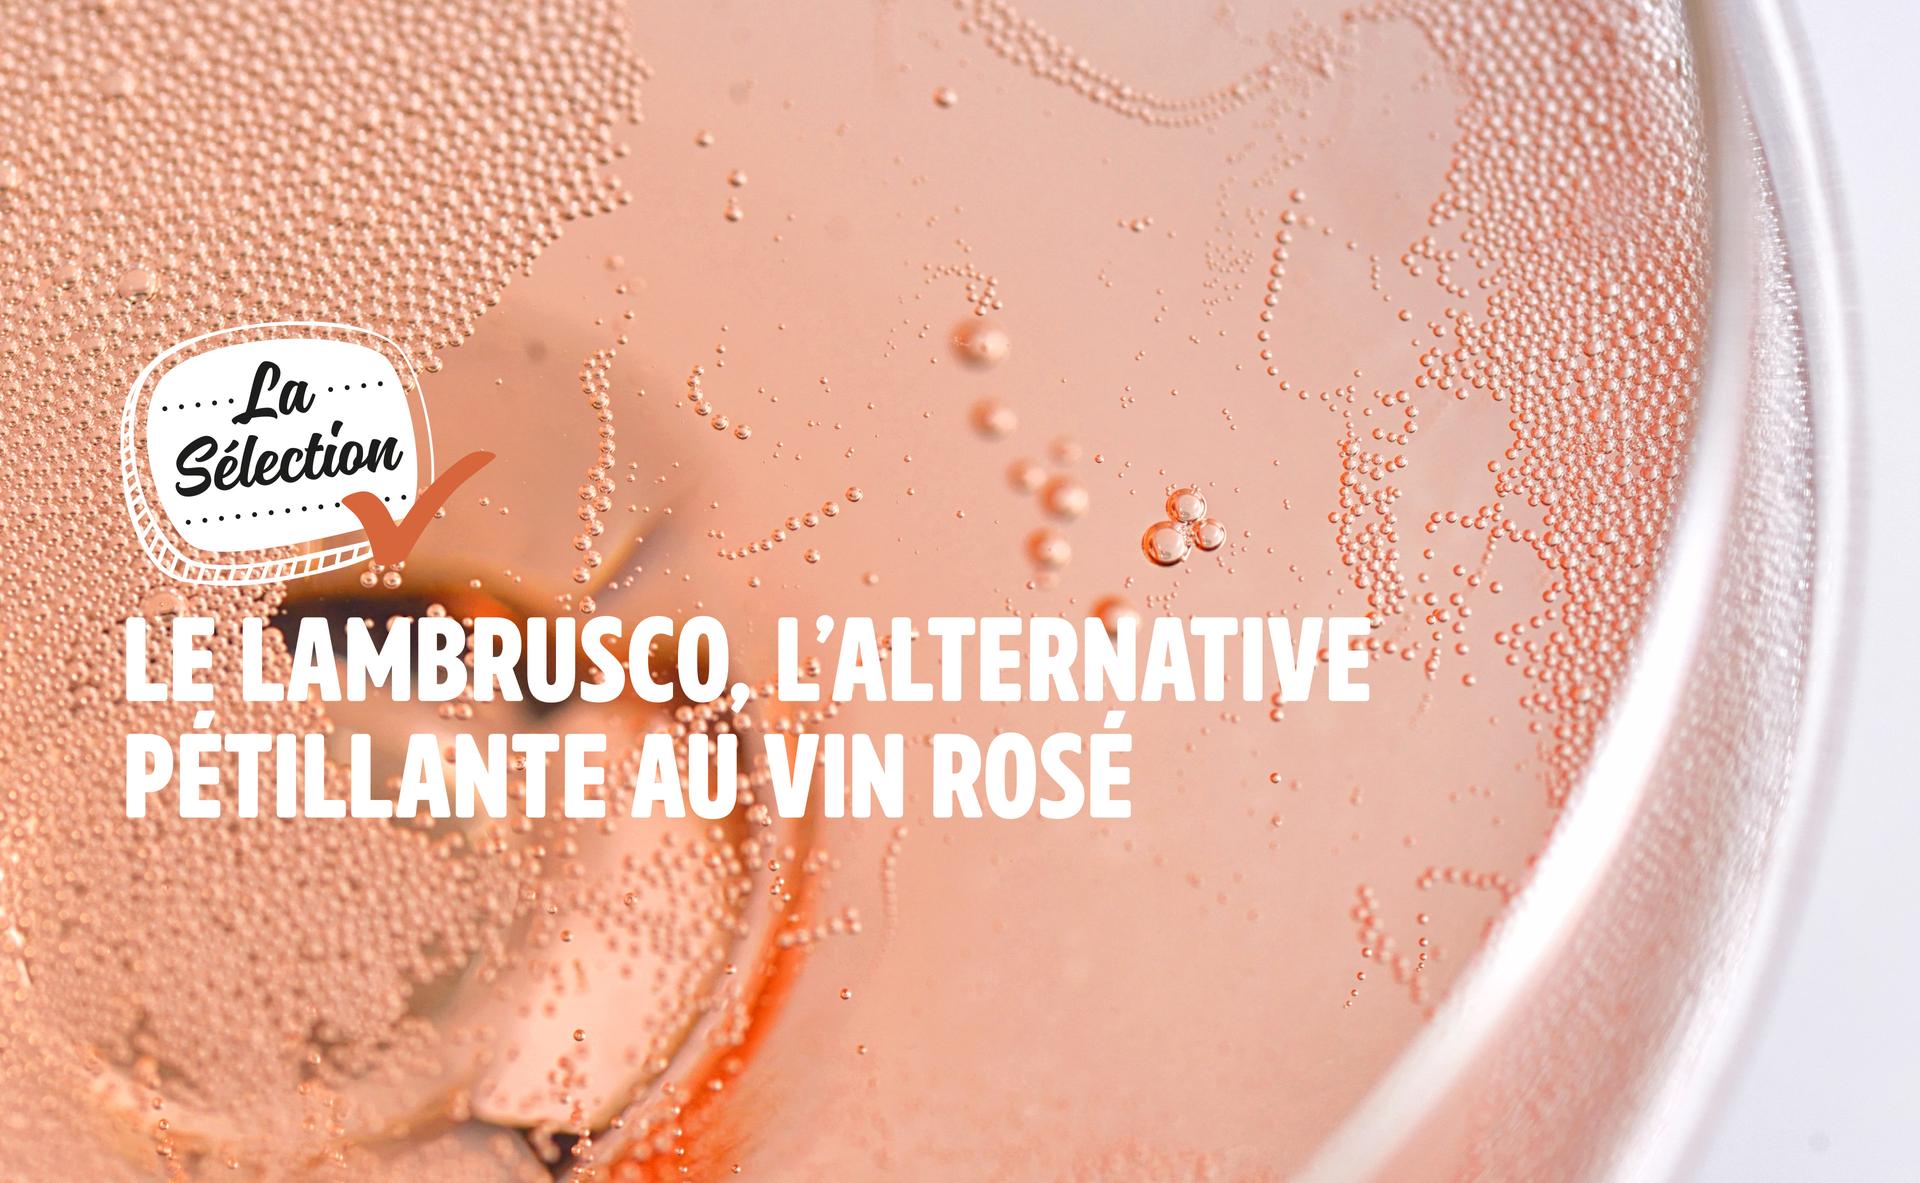 Le Lambrusco, l'alternative pétillante au vin rosé pour l'apéritif